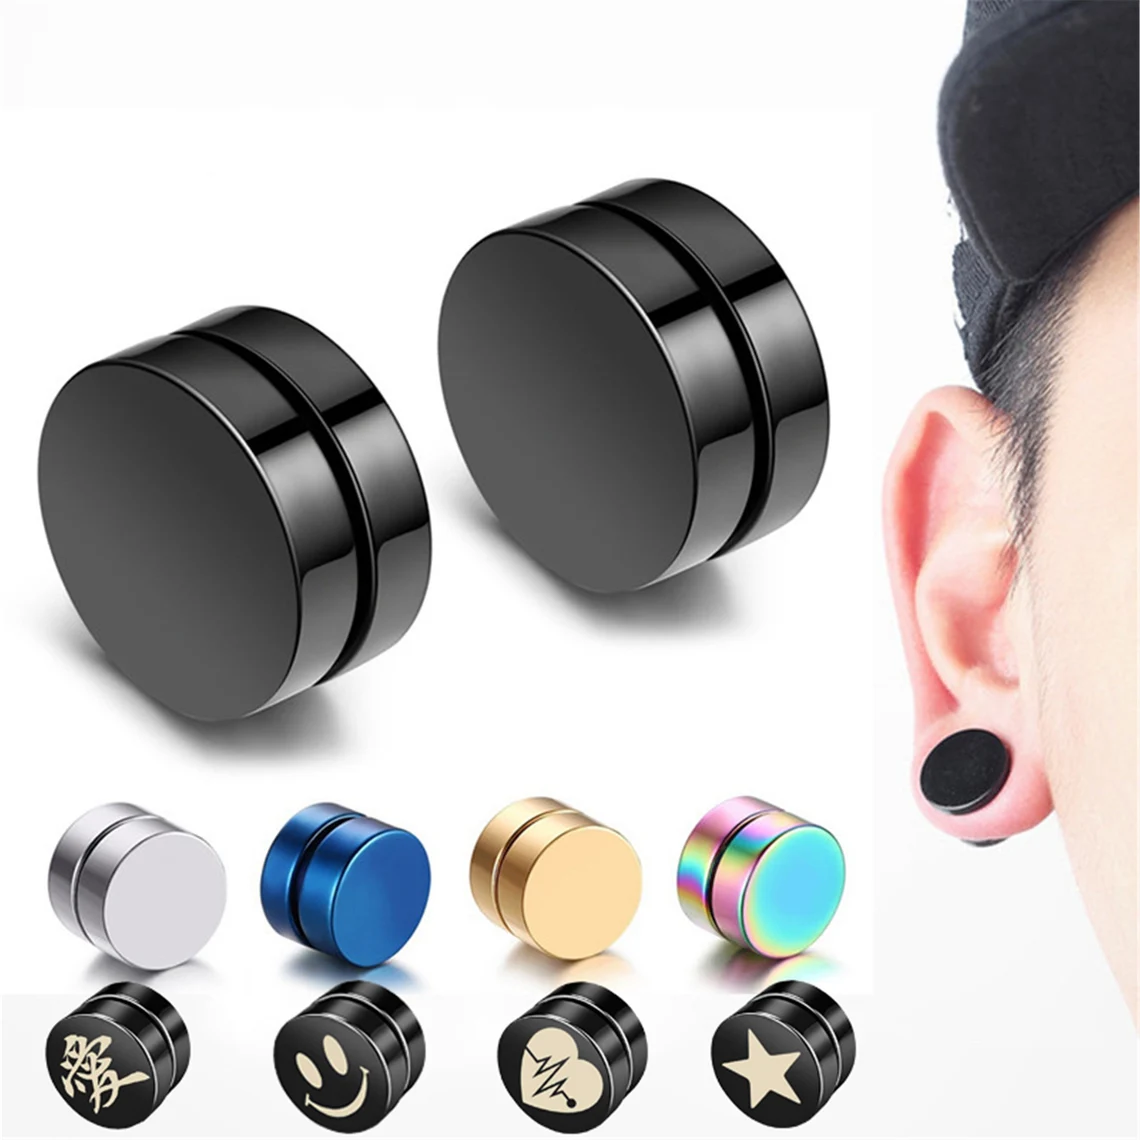 Mens Stainless Steel Black Earrings Com Magnetic Stainless Steel Small  Magnetic NonPiercing Stud Earrings For